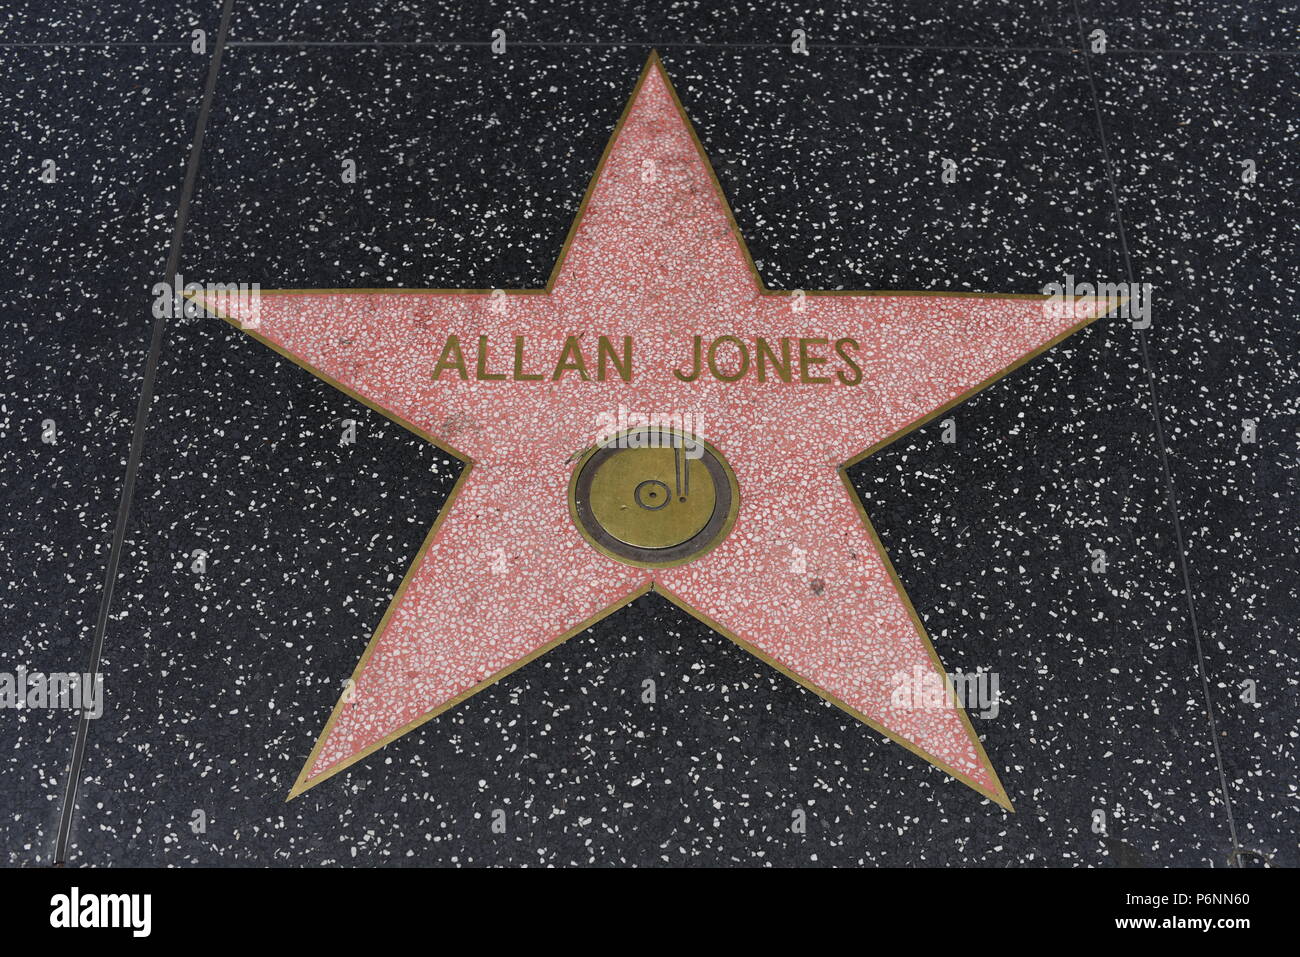 HOLLYWOOD, CA - 29 Giugno: Allan Jones della stella sulla Hollywood Walk of Fame in Hollywood, la California il 29 giugno 2018. Foto Stock